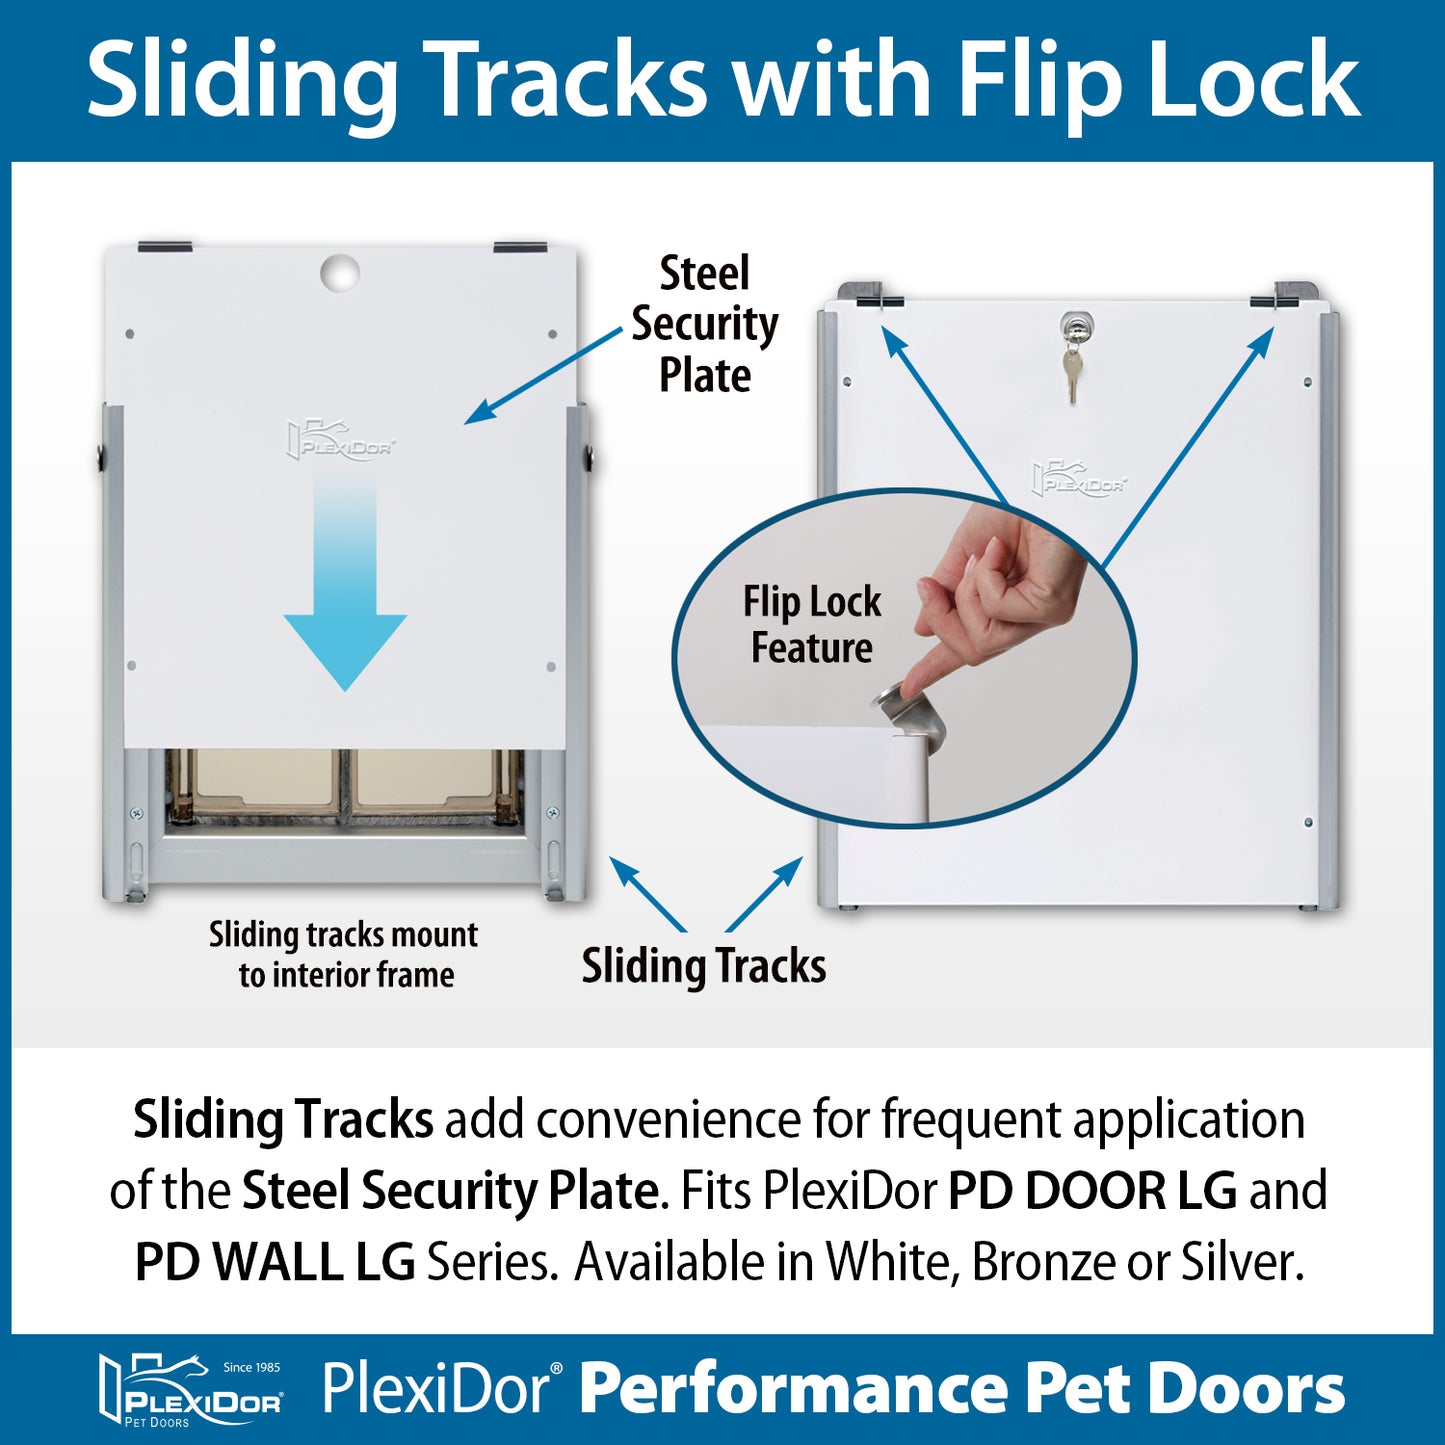 PlexiDor Sliding Track Accessories